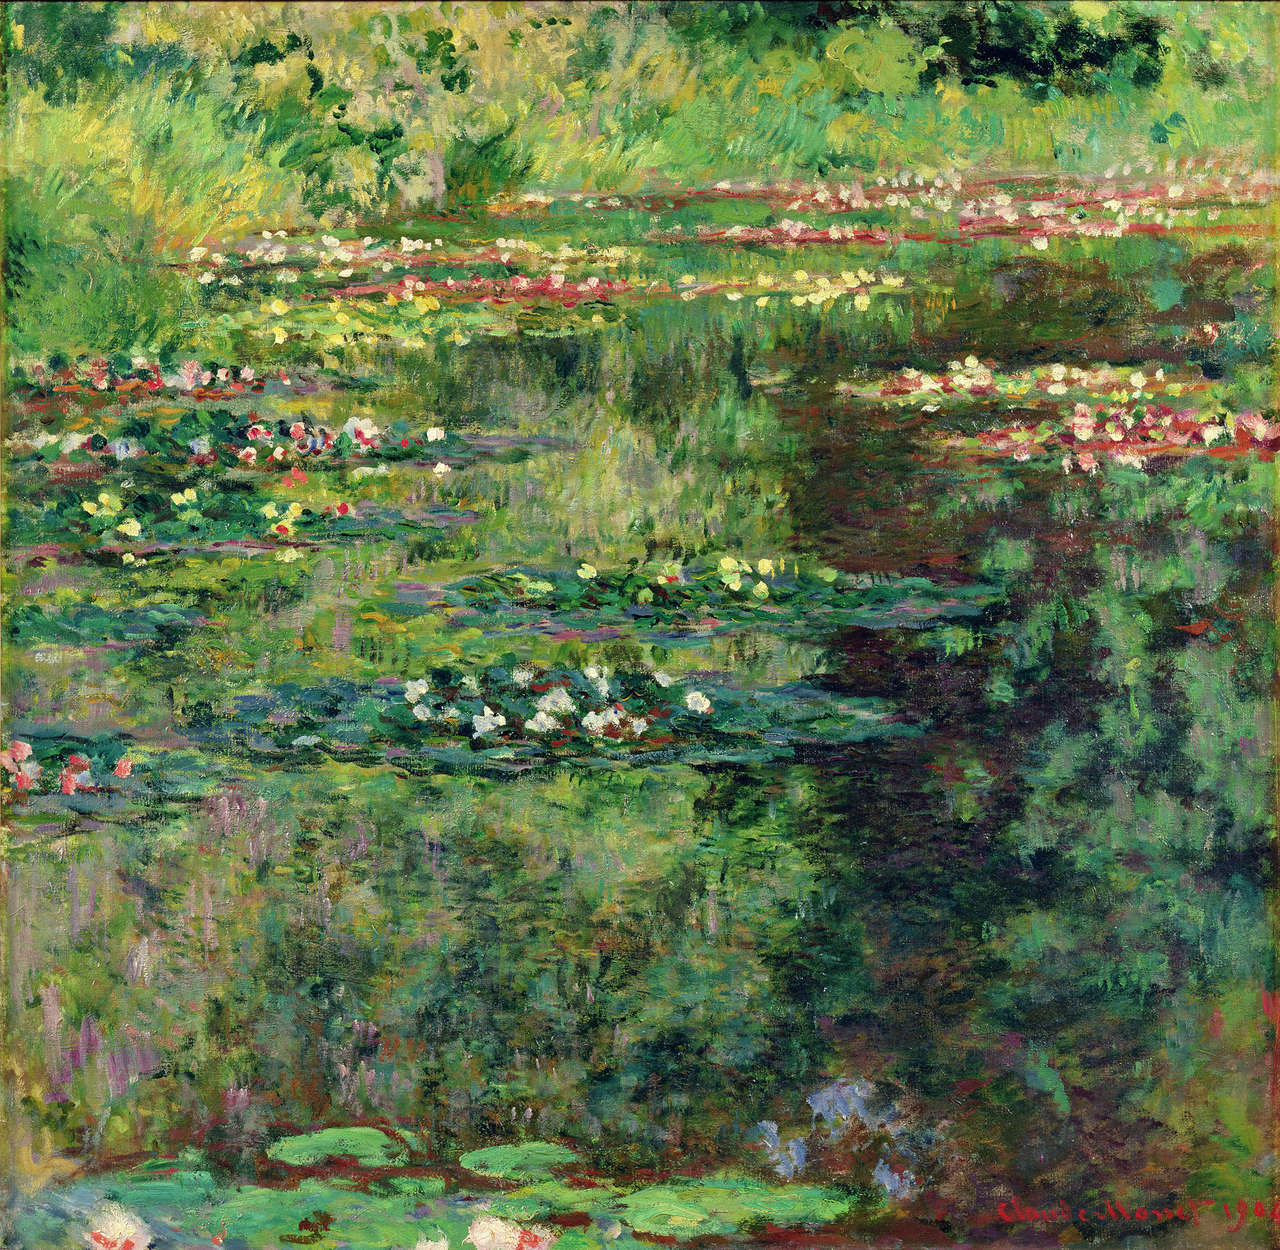             Fototapete "Der Seerosenteich" von Claude Monet
        